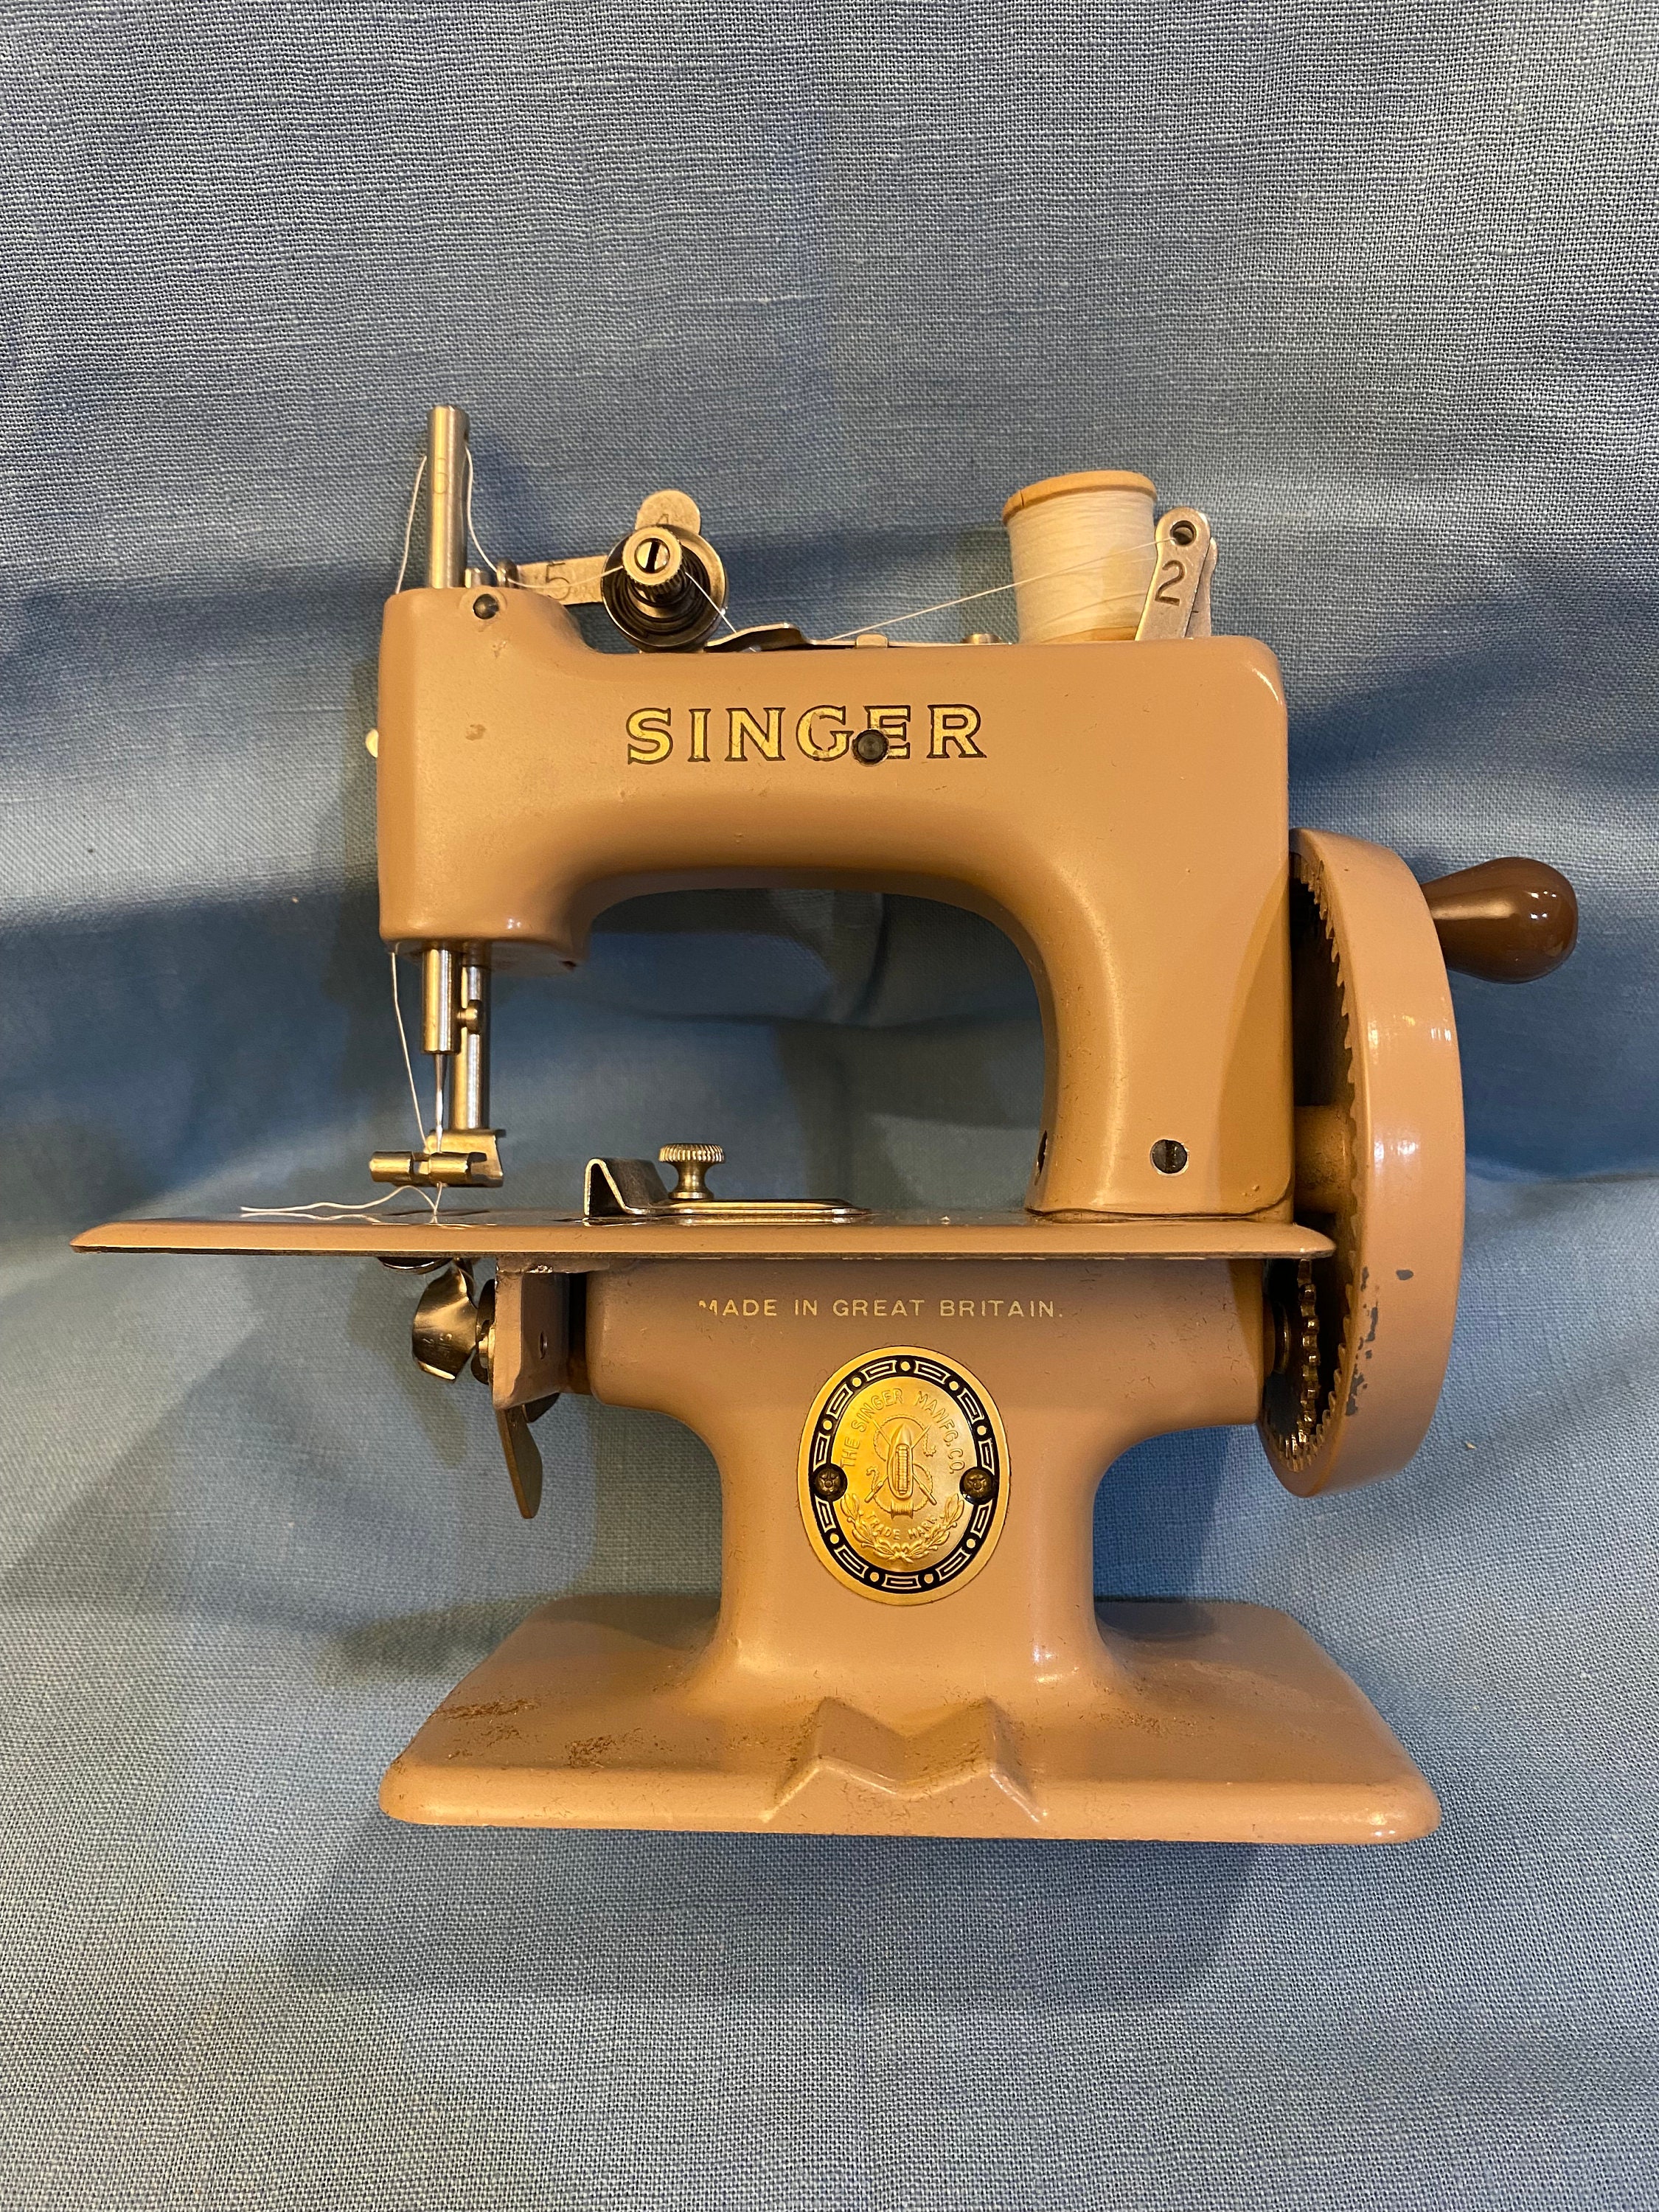 Janome Vogue Stitch Zig Zag Sewing Machine Mechanically Restored